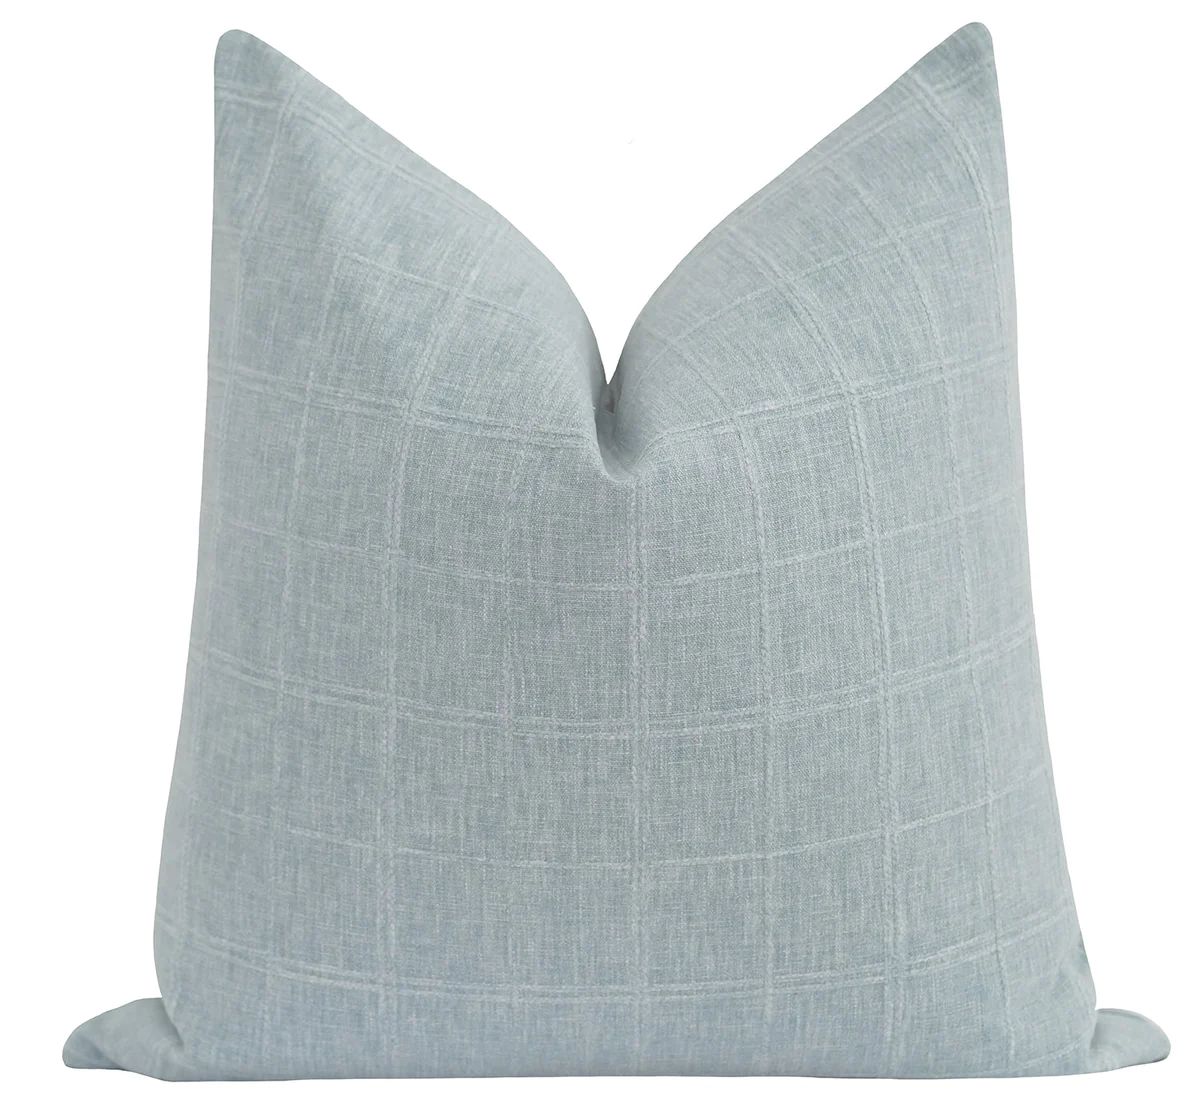 Beaufort Glacier Blue Plaid Pillow | Land of Pillows